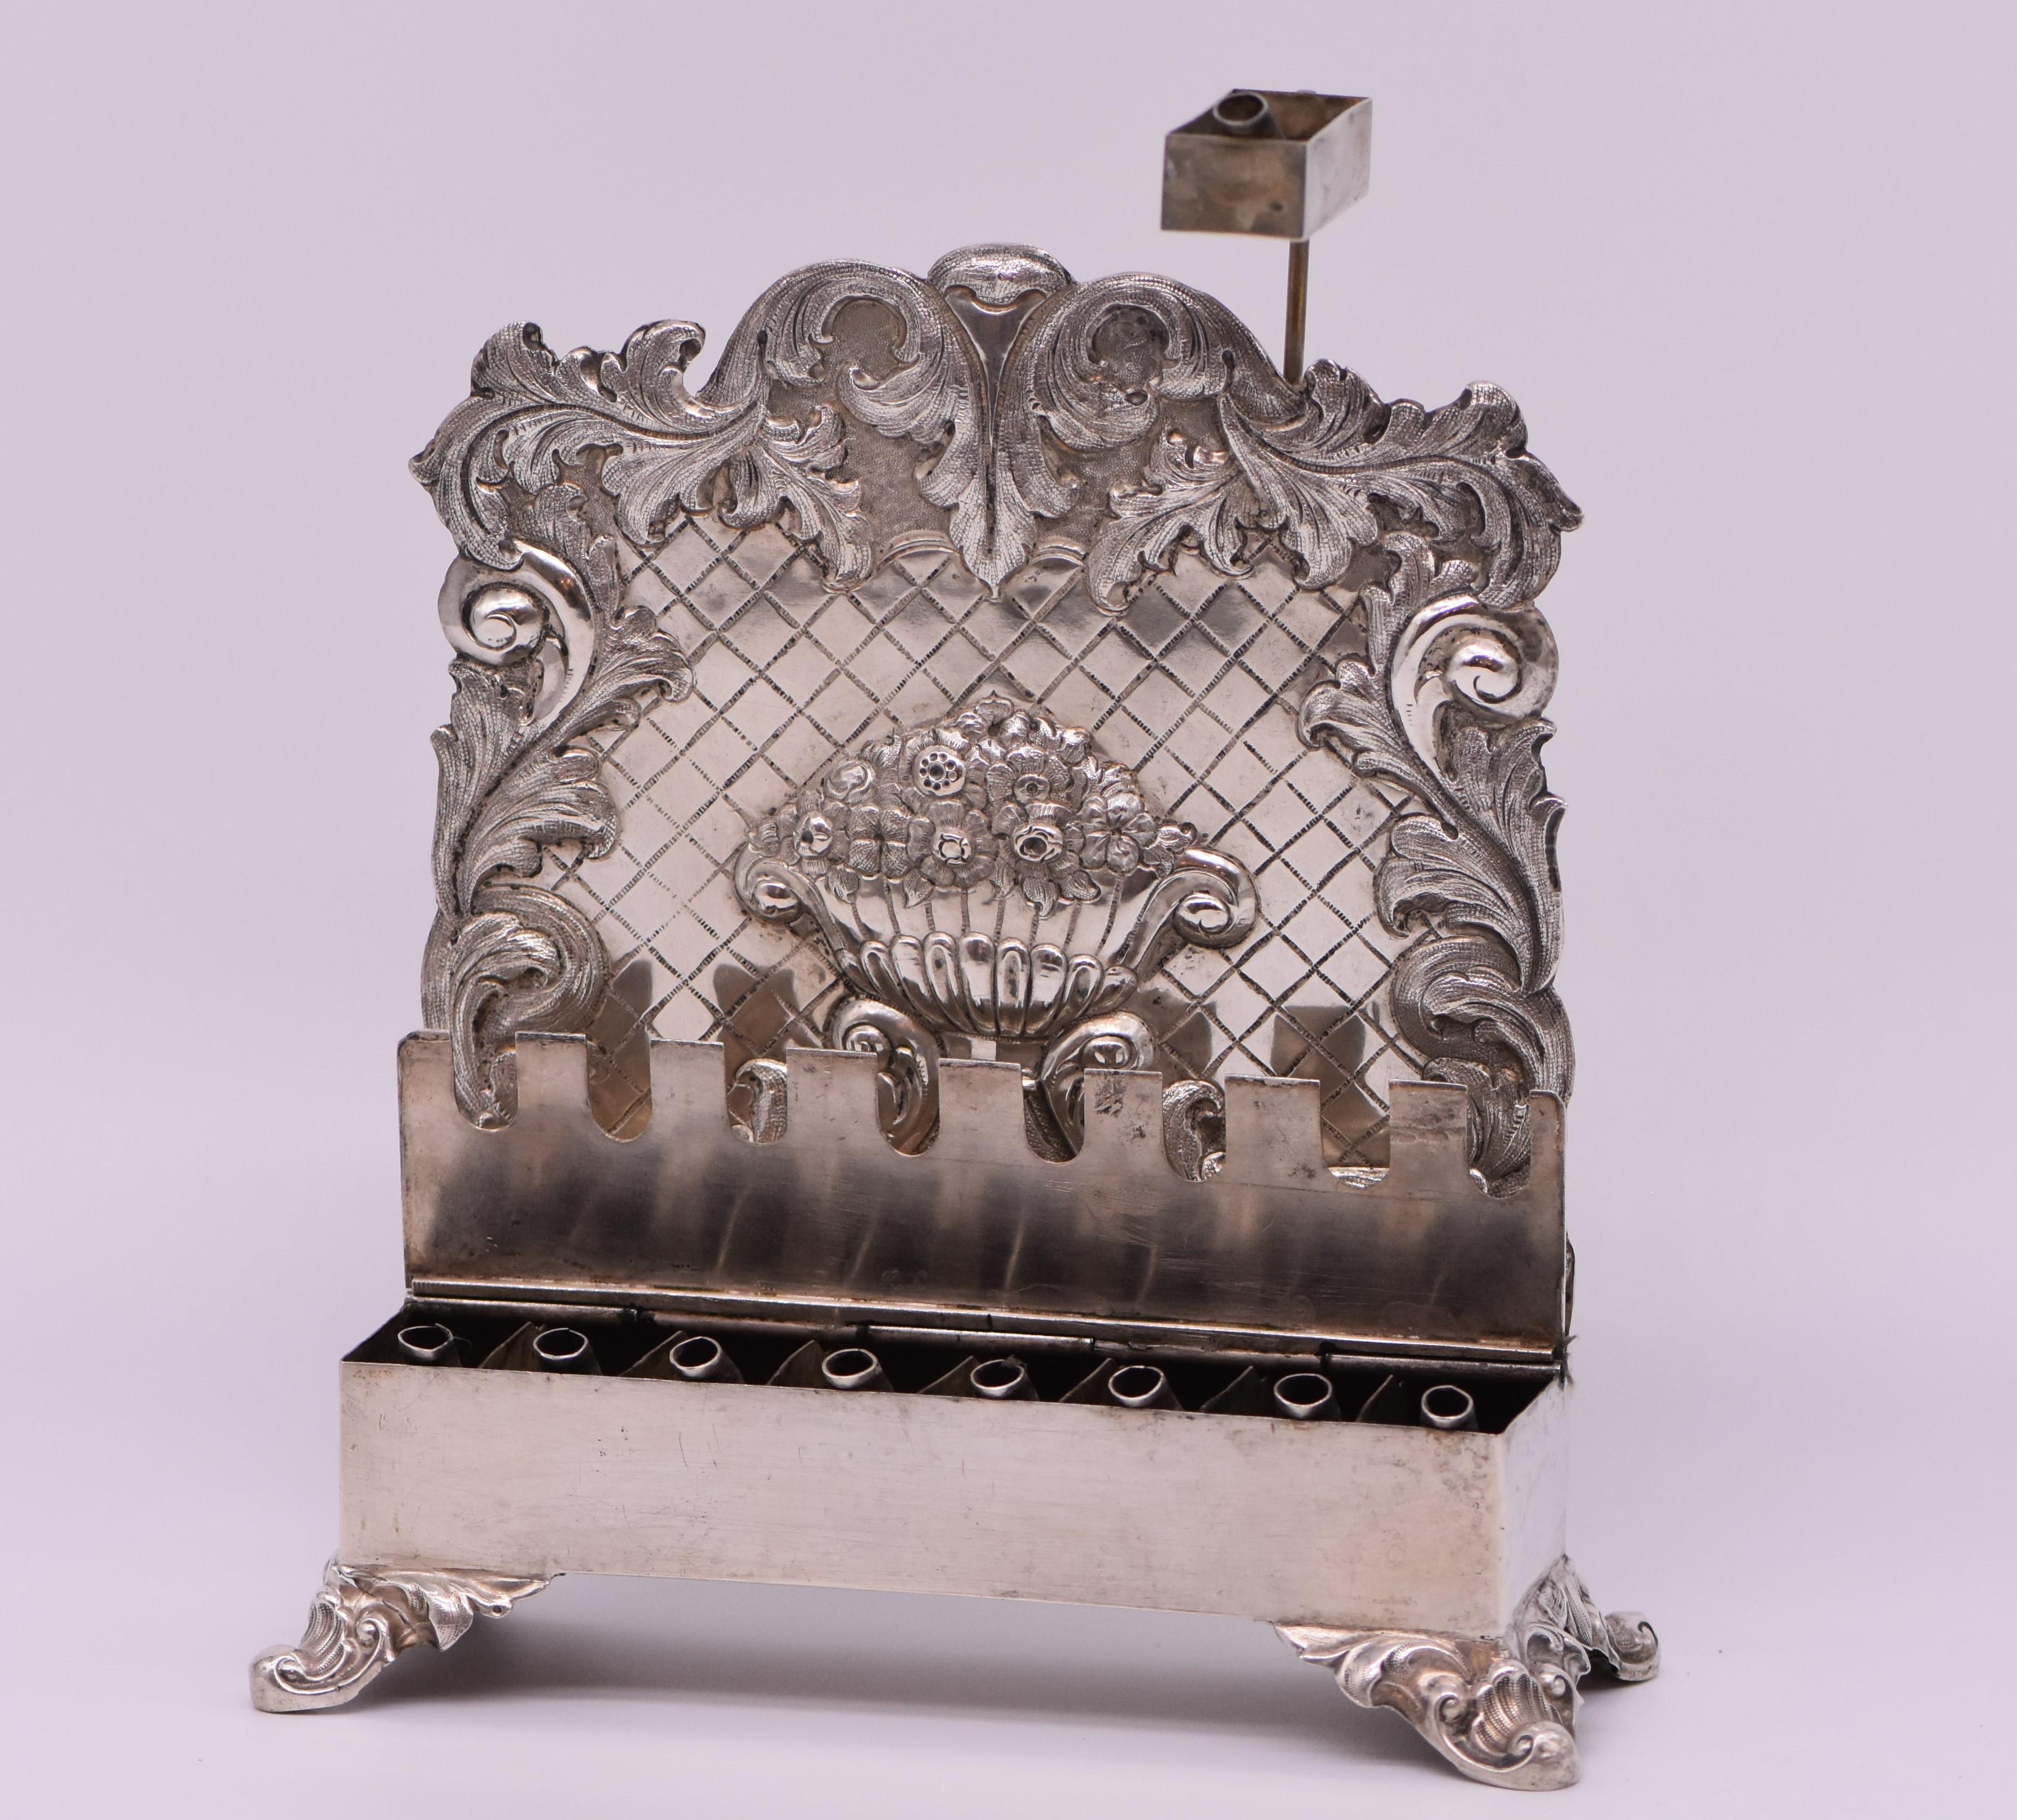 Deutsche Chanukka-Lampe aus Silber, Marke L.S. incuse, berlin, 1847-50. In Form einer Bank mit abgedeckten Lampen, auf Muschel- und Schneckenfüßen. Die Rückplatte ist mit einer ziselierten Blumenurne auf Spaliergrund innerhalb einer geprägten